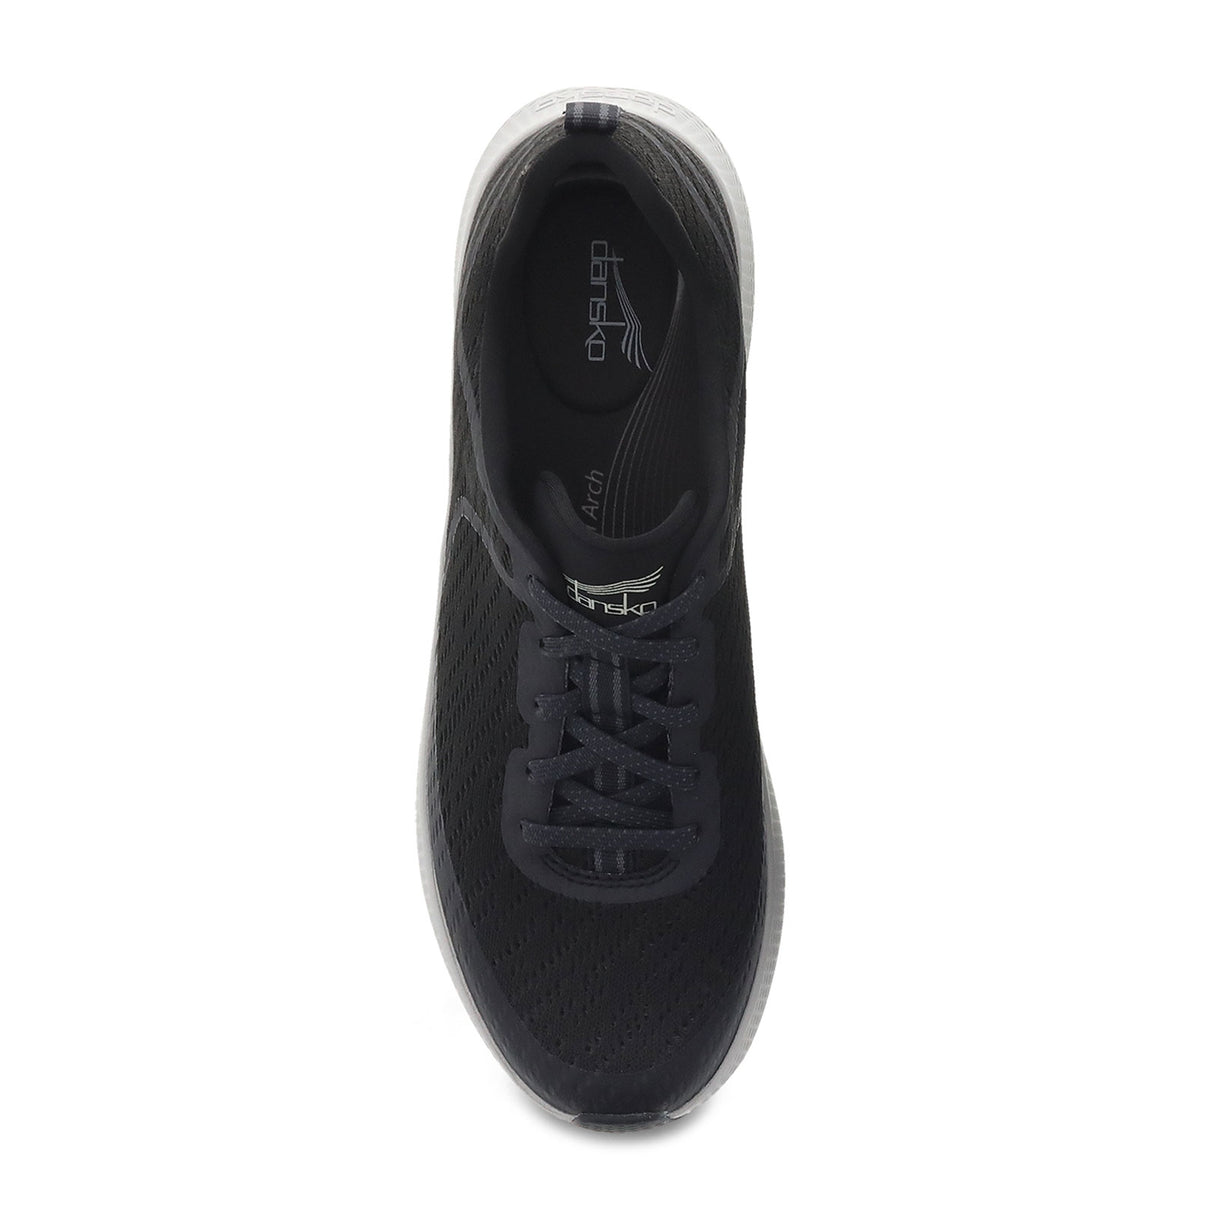 Dansko Sky Sneaker (Women) - Black Mesh Athletic - Athleisure - The Heel Shoe Fitters